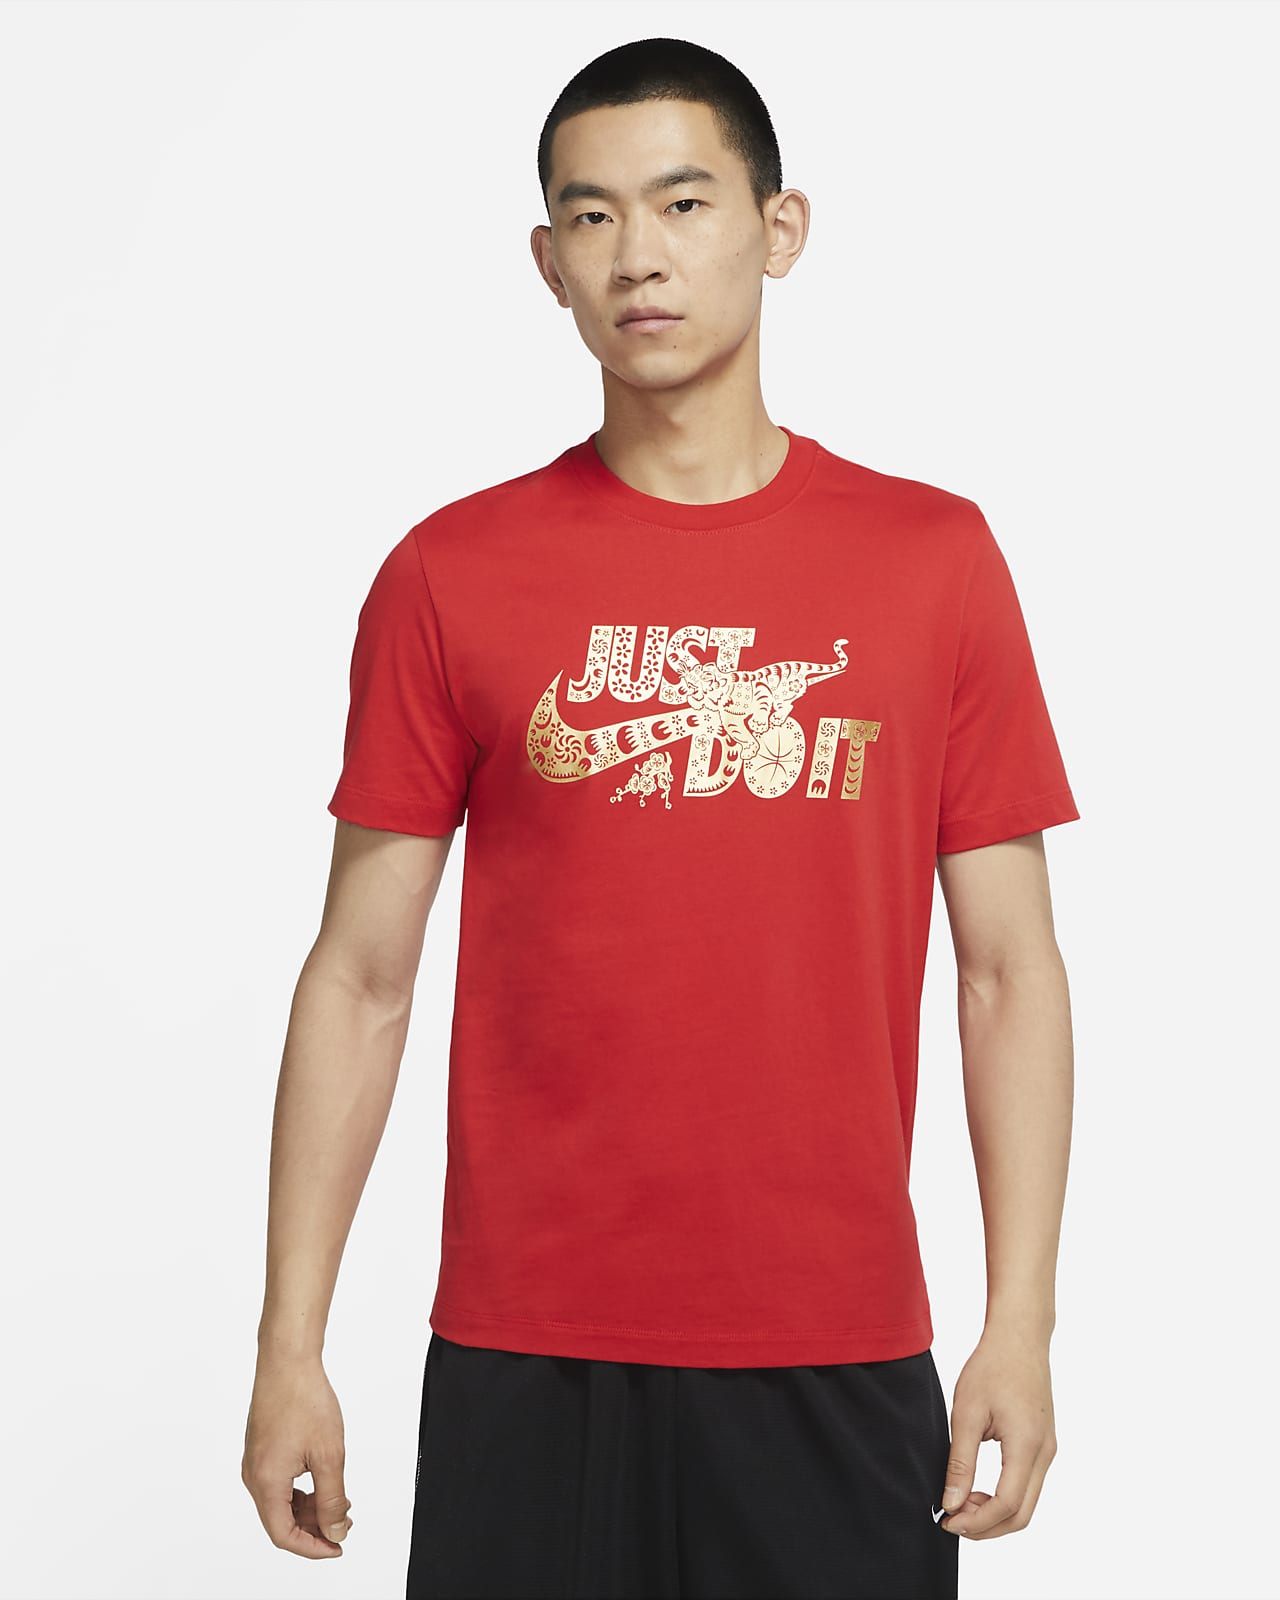 เสื้อยืดบาสเก็ตบอลผู้ชาย Nike “Just Do It”